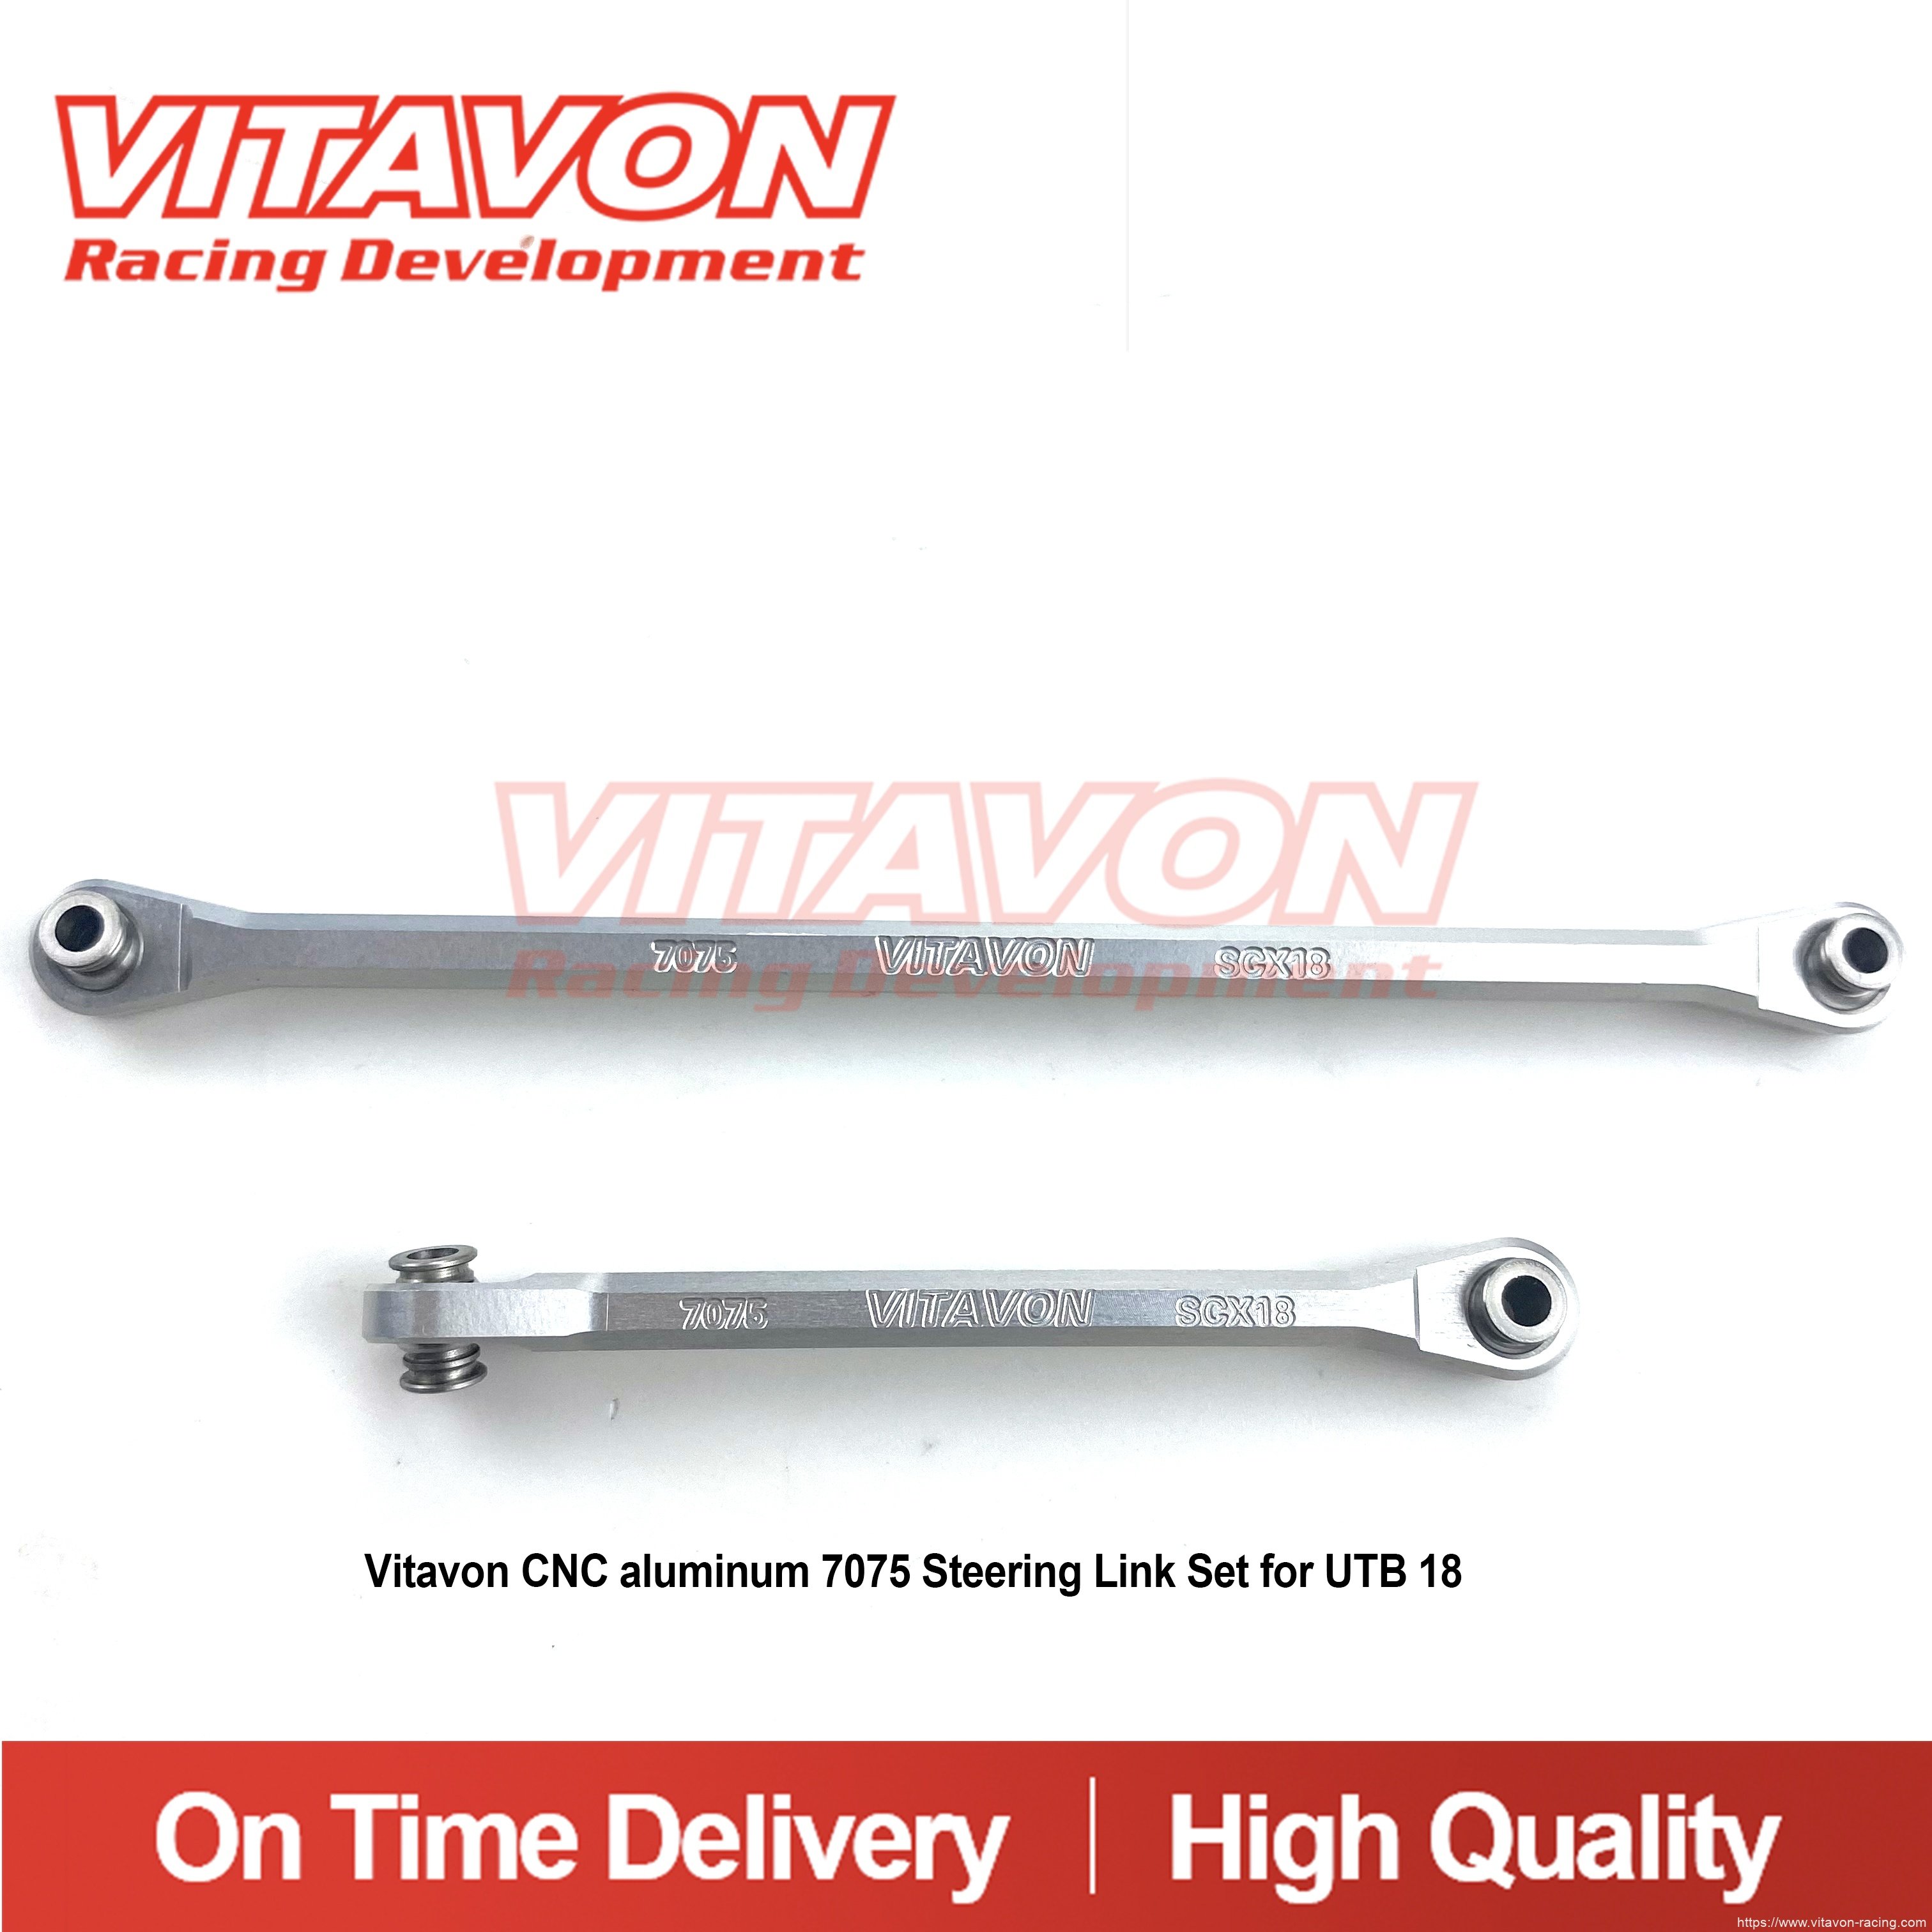 Vitavon CNC aluminum 7075 Steering Link Set for UTB 18